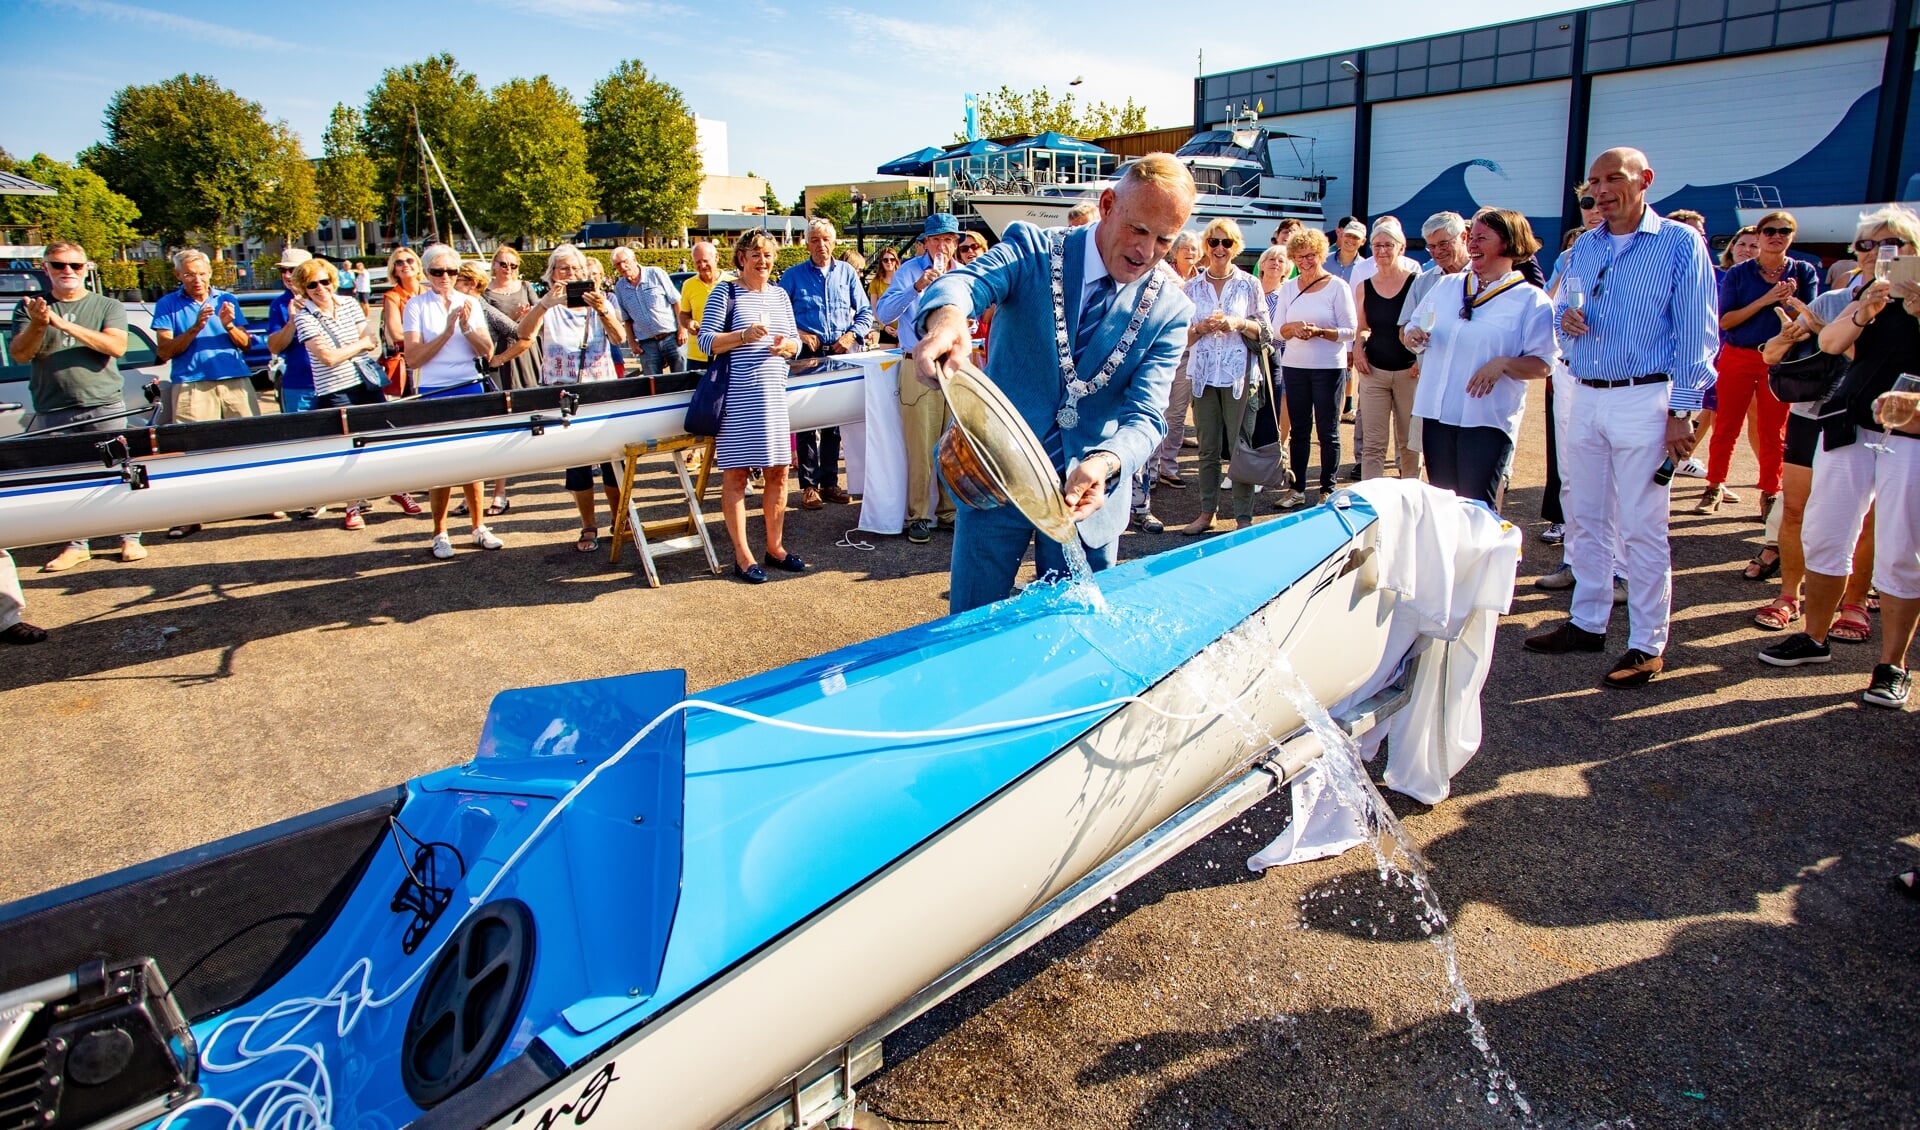 Burgemeester Han ter Heegde van Gooise Meren doopt de nieuwe roeiboot in Huizen.